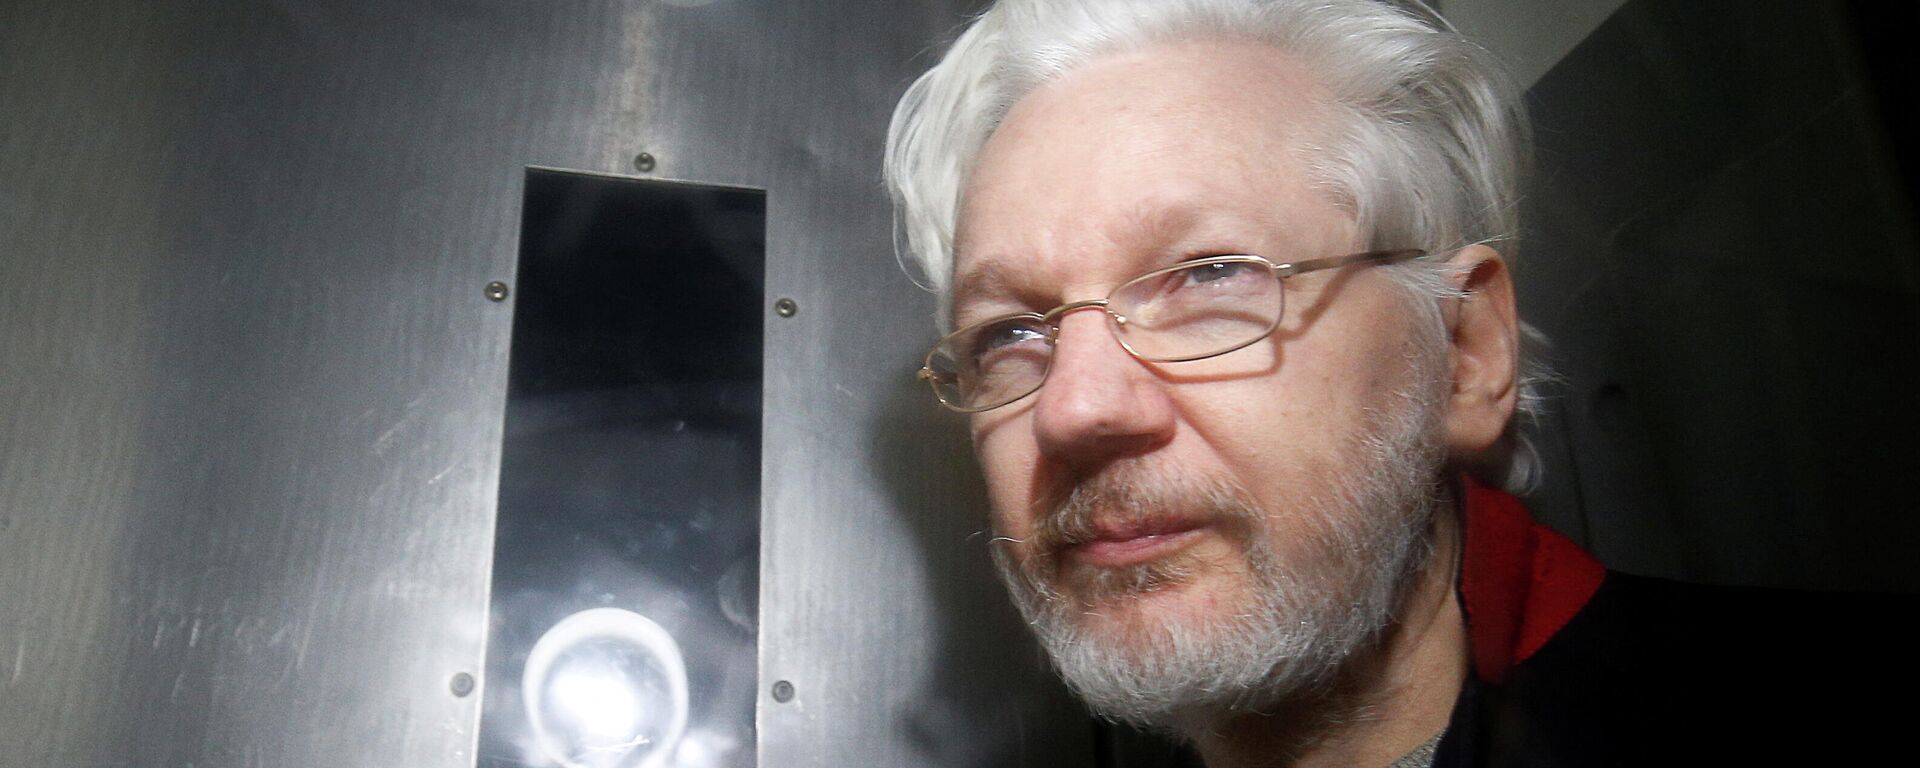 El fundador de WikiLeaks, Julian Assange - Sputnik Mundo, 1920, 10.12.2021